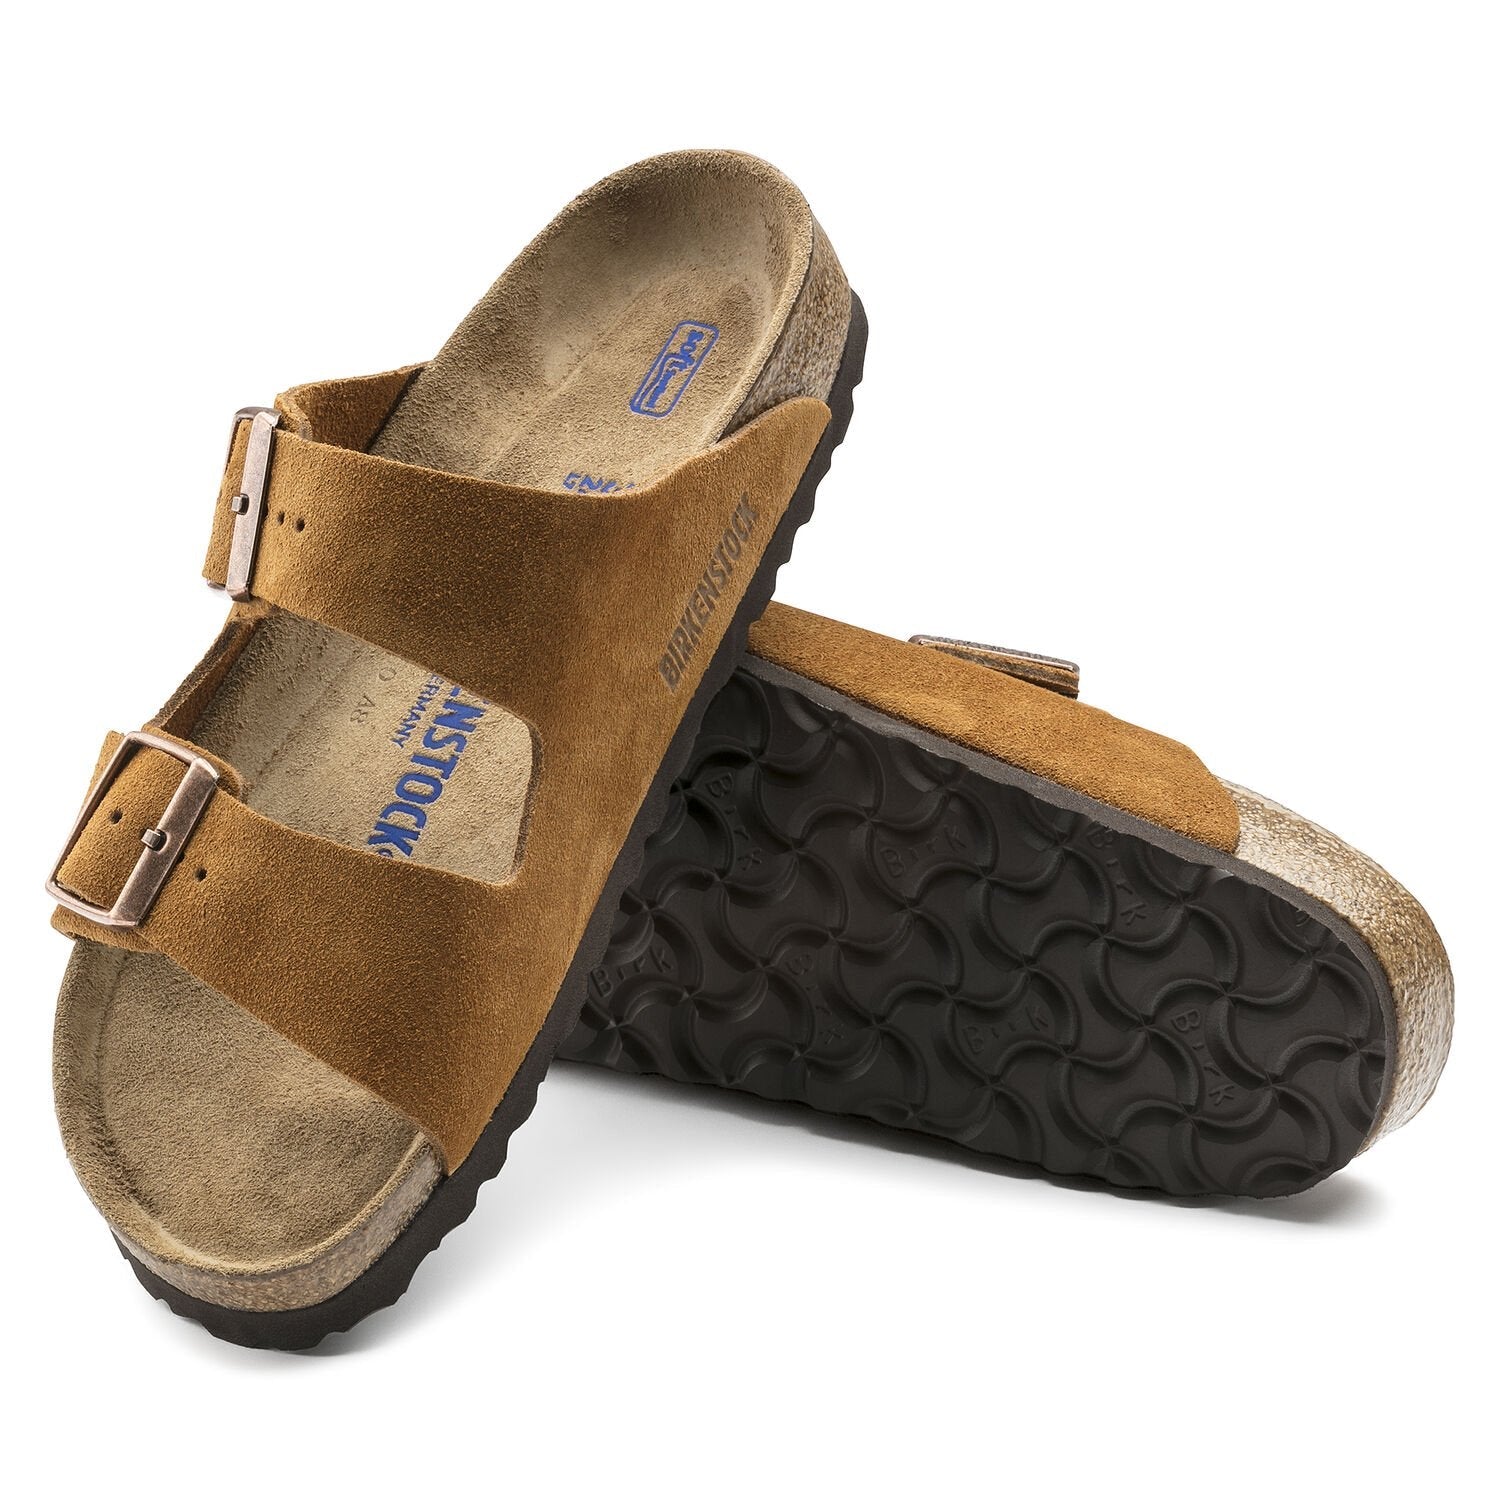 Arizona Suede Sandals in Brown - Birkenstock